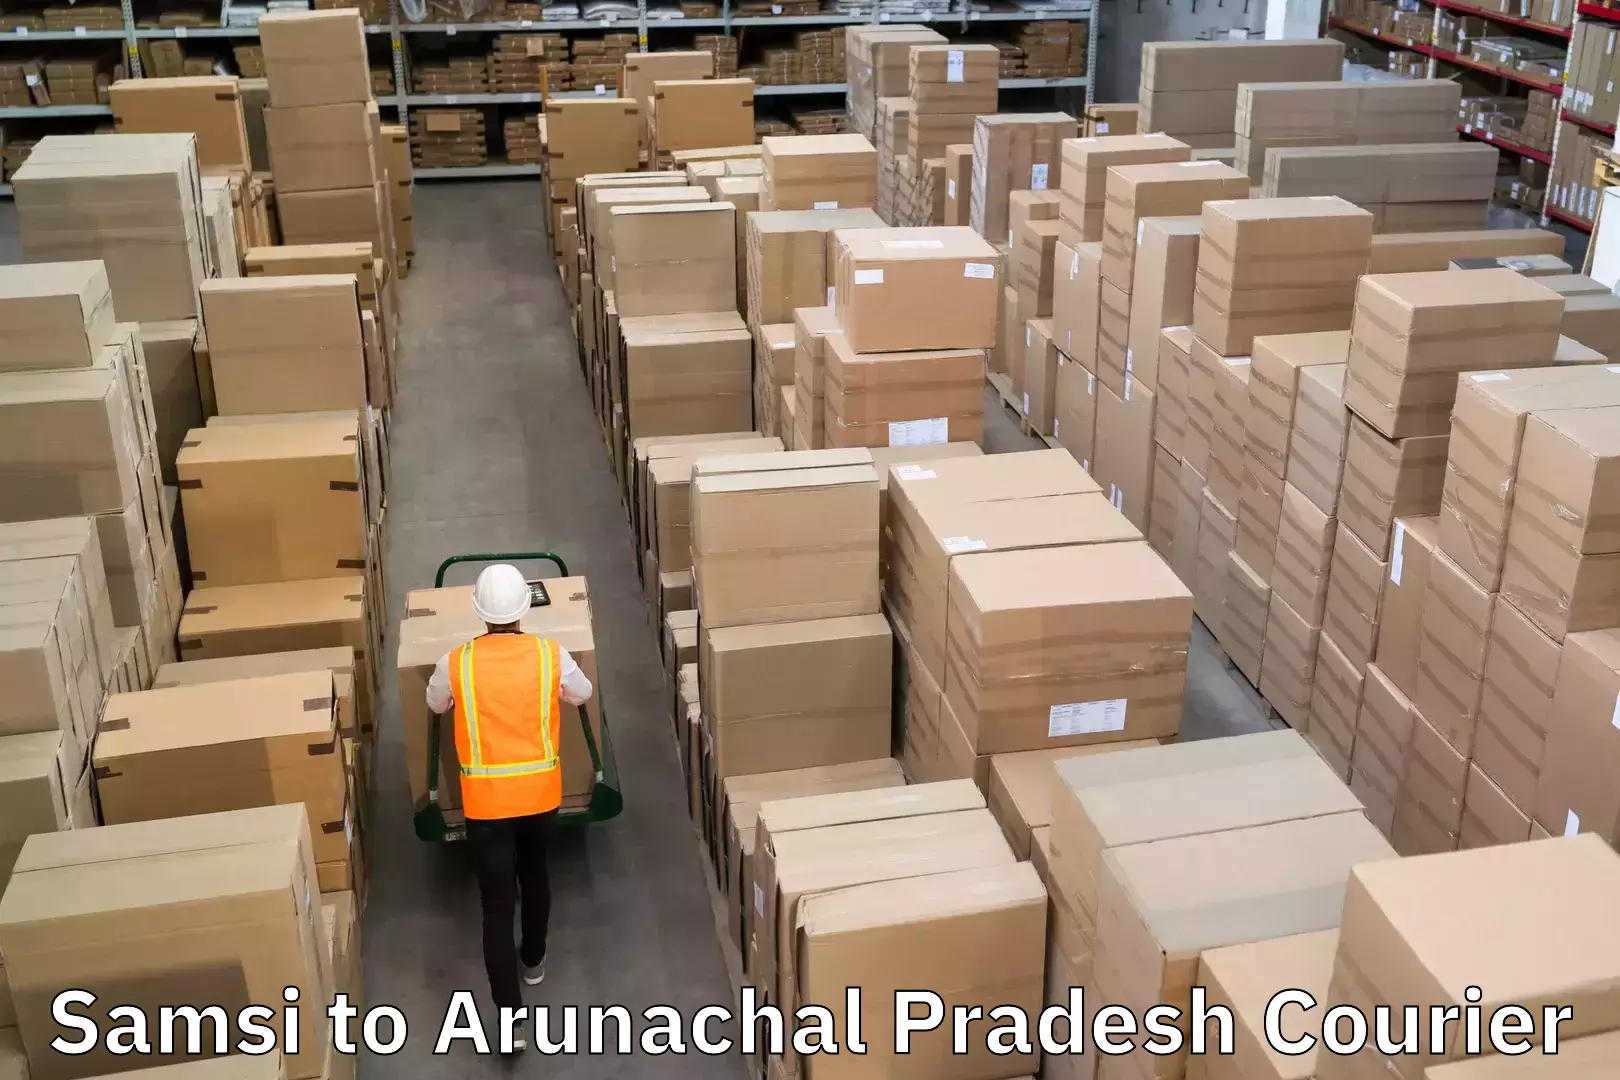 Courier service innovation in Samsi to Arunachal Pradesh